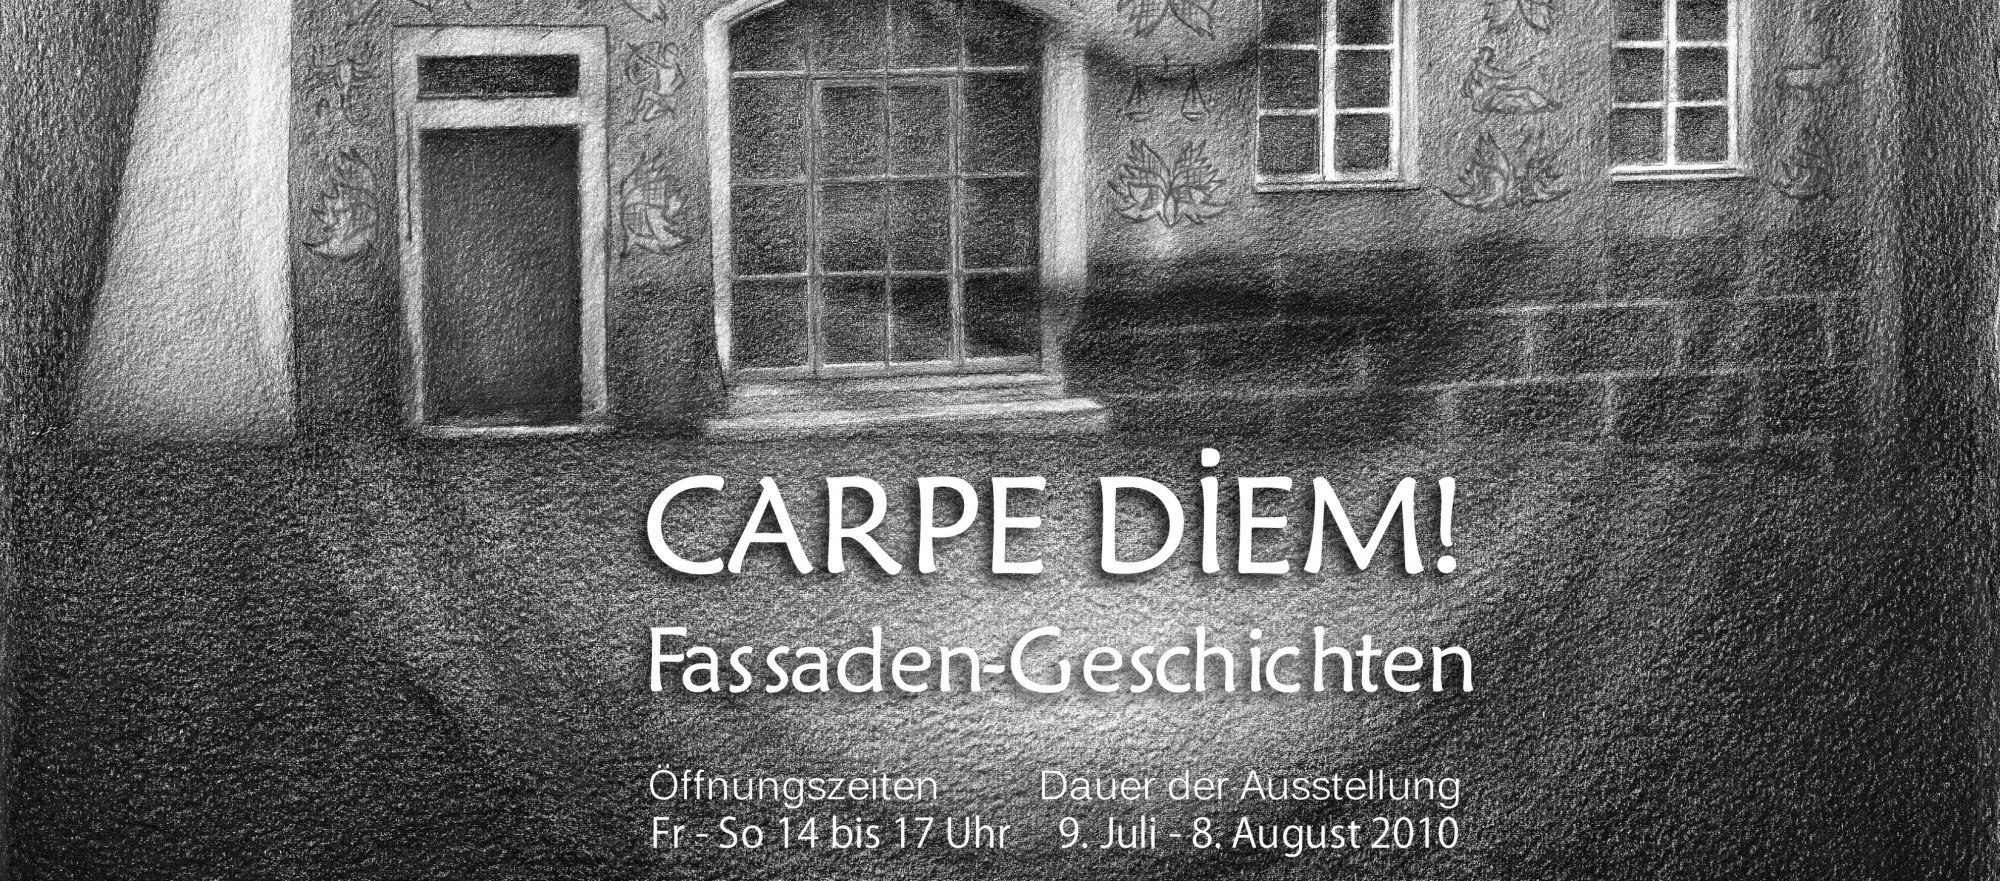 Das Bild zeigt einen Ausschnitt des Ausstellungsplakates &quot;Carpe Diem!&quot;. Die Fassade des Schmidt-Hauses ist in einer schwarz-weiß Zeichnung wiedergegeben. Hinterlegt ist ein Porträtfoto von Karl Schmidt.